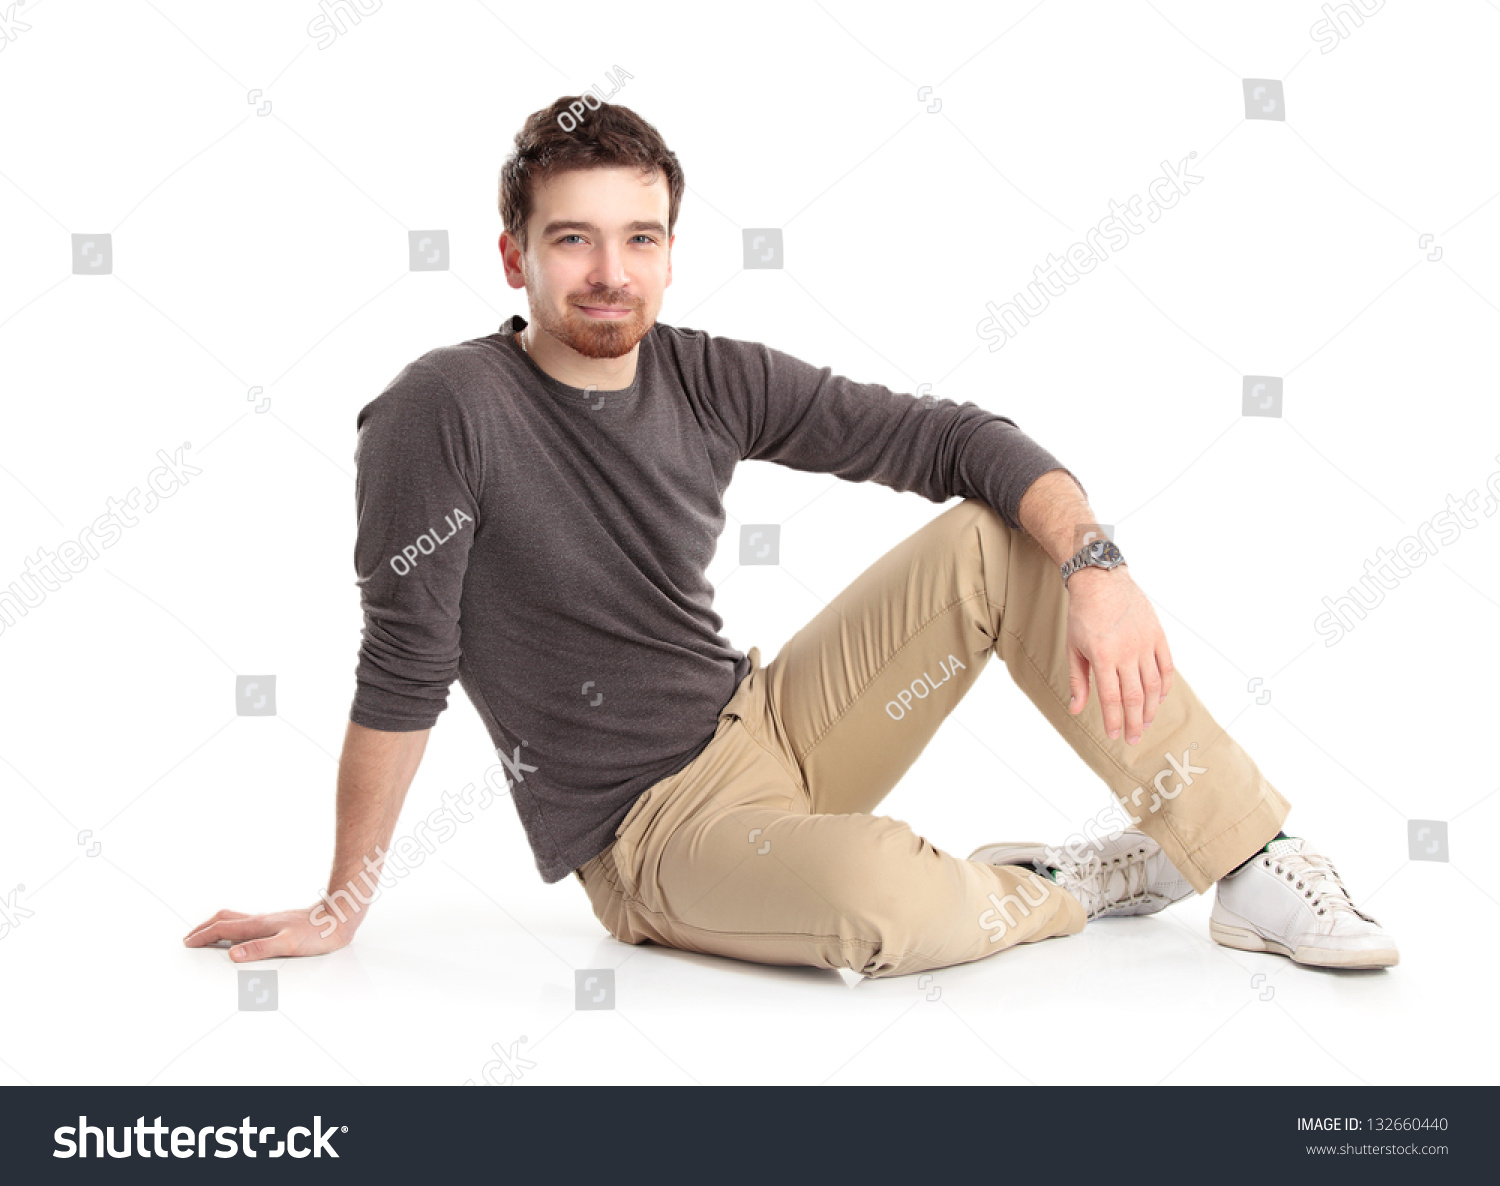 Flirtatious Man Sitting On Floor Stock Photo 132660440 - Shutterstock